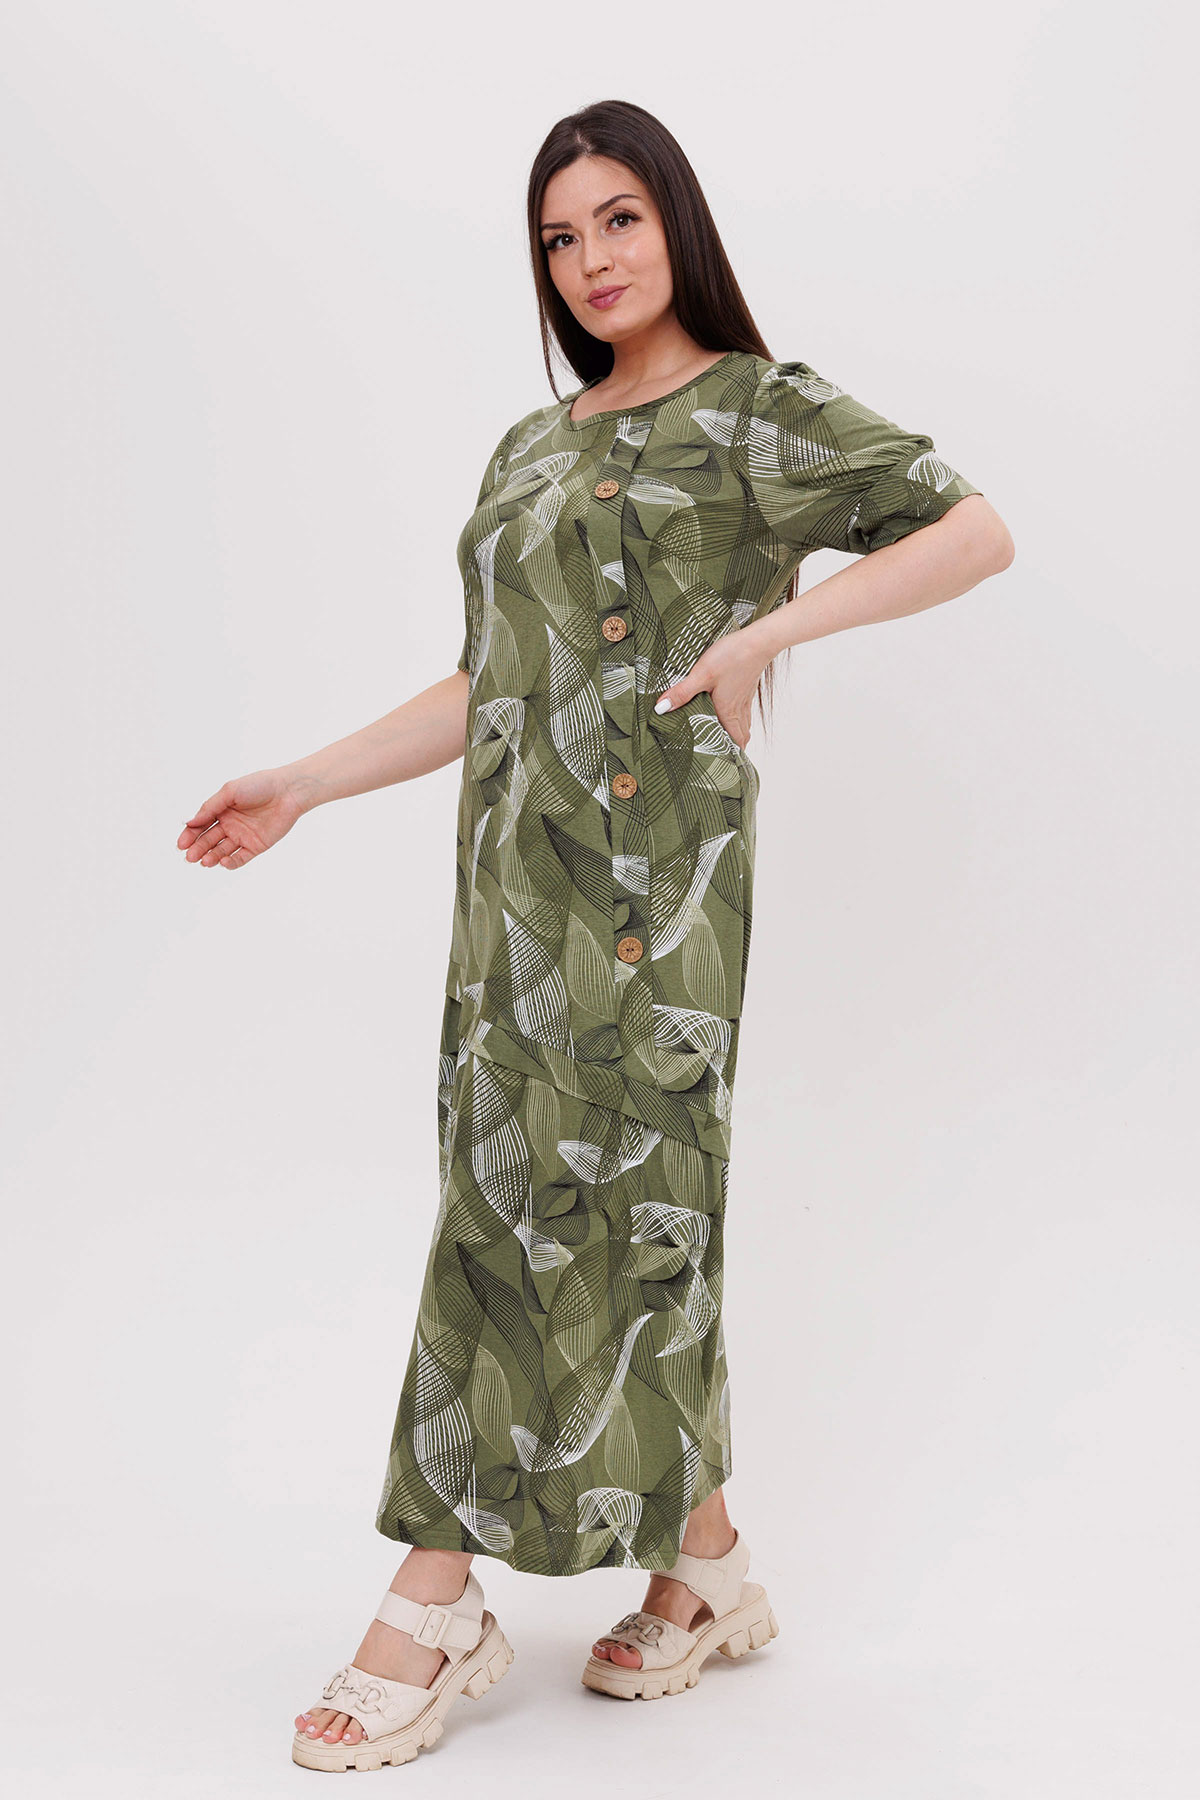 Жен. платье повседневное арт. 23-0541 Зеленый р. 54 Моделлини, размер 54 - фото 4